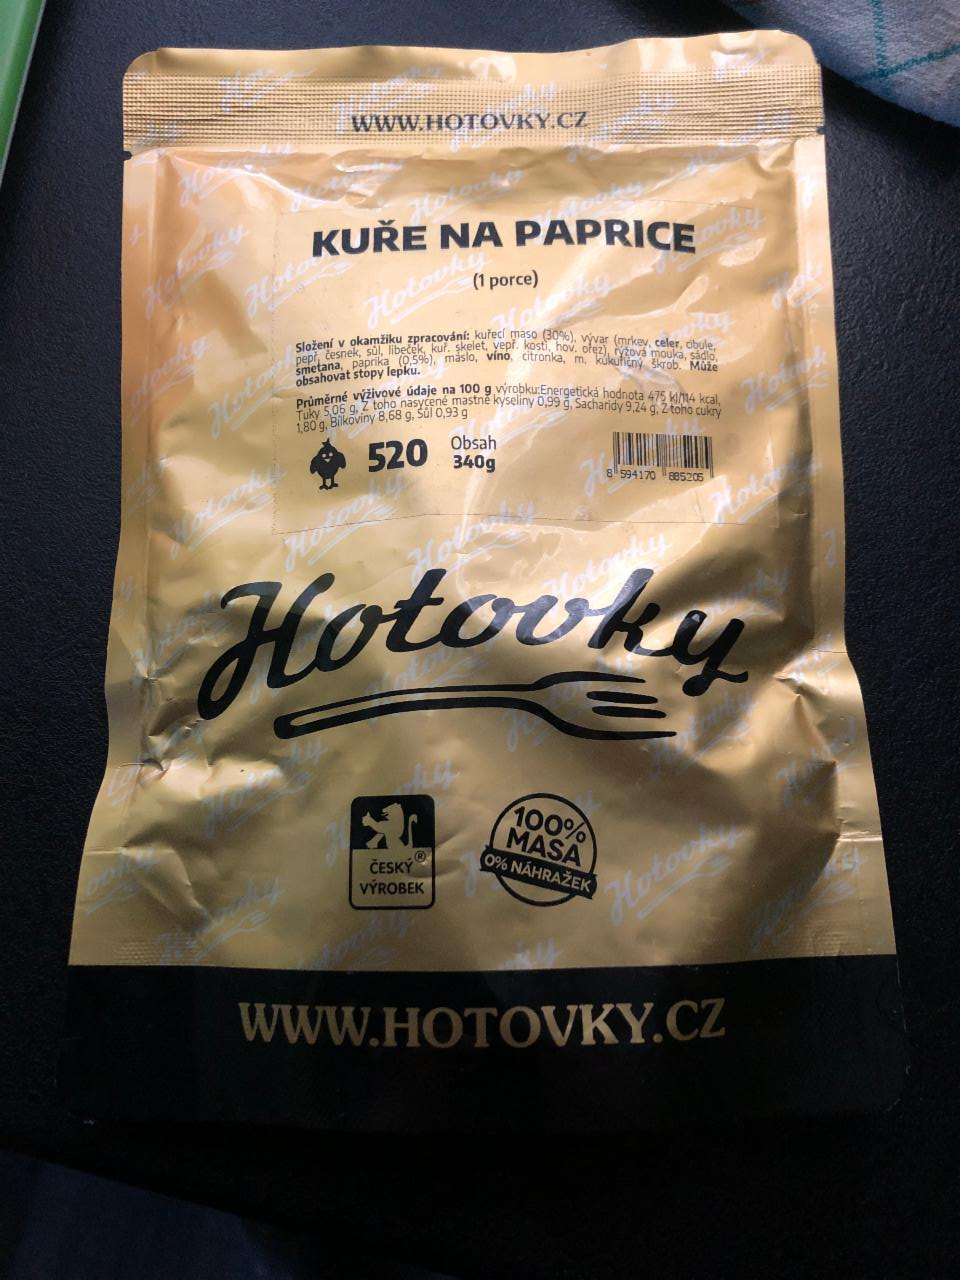 Fotografie - Kuře na paprice Hotovky.cz